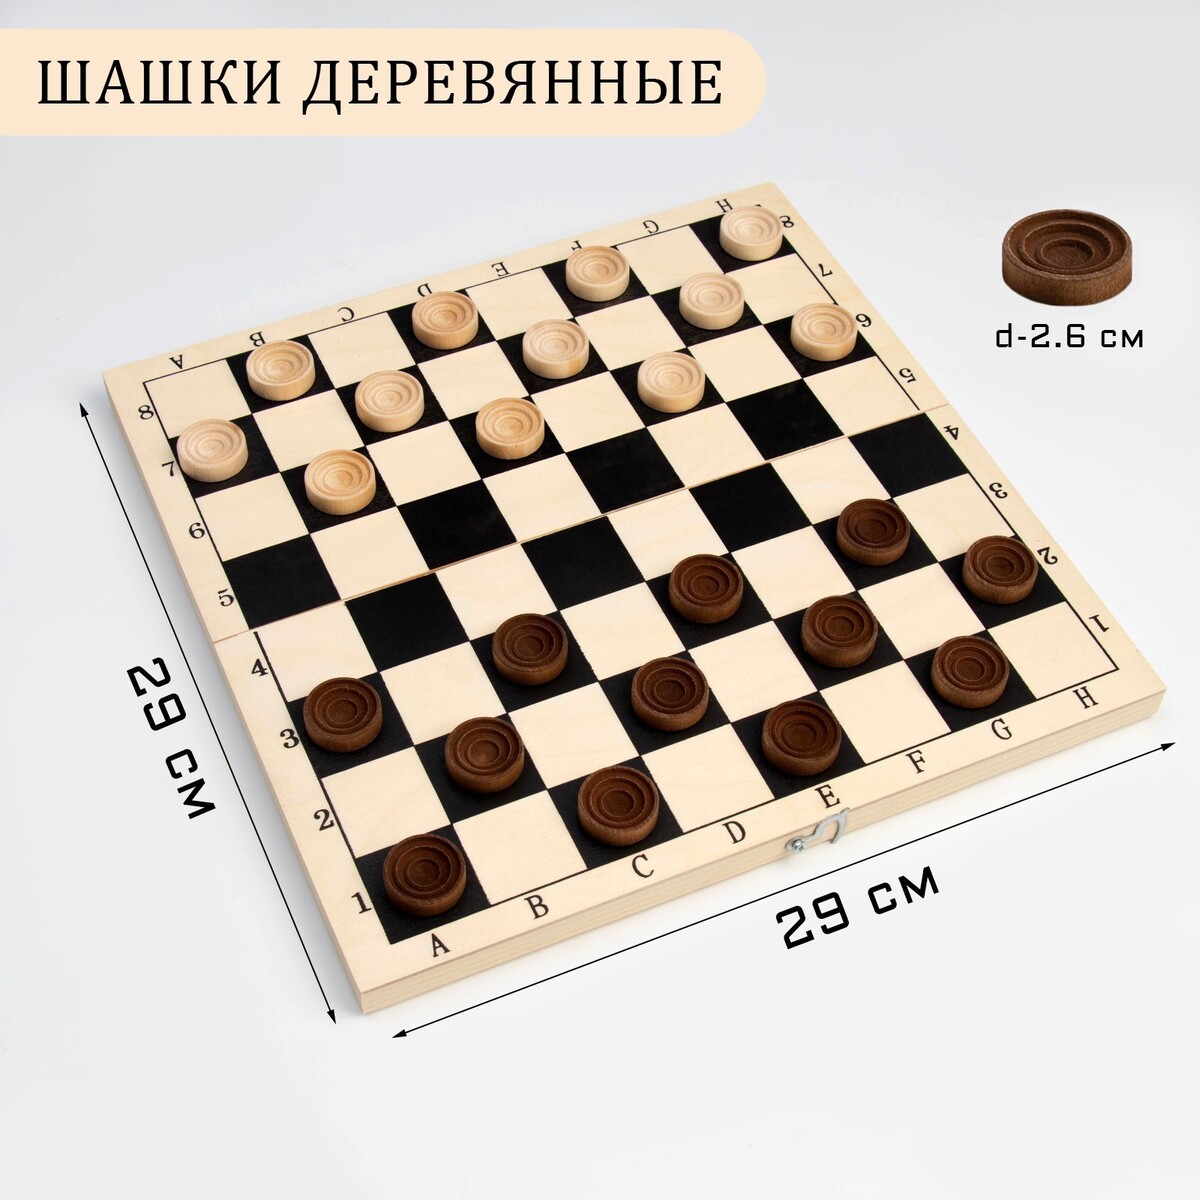 Шашки деревянные, доска дерево 29 х 29 см, d фишки=2.6 см, h=0.9 см настольная игра 3 в 1 шахматы шашки нарды деревянные фигуры доска 29 5 х 29 5 см